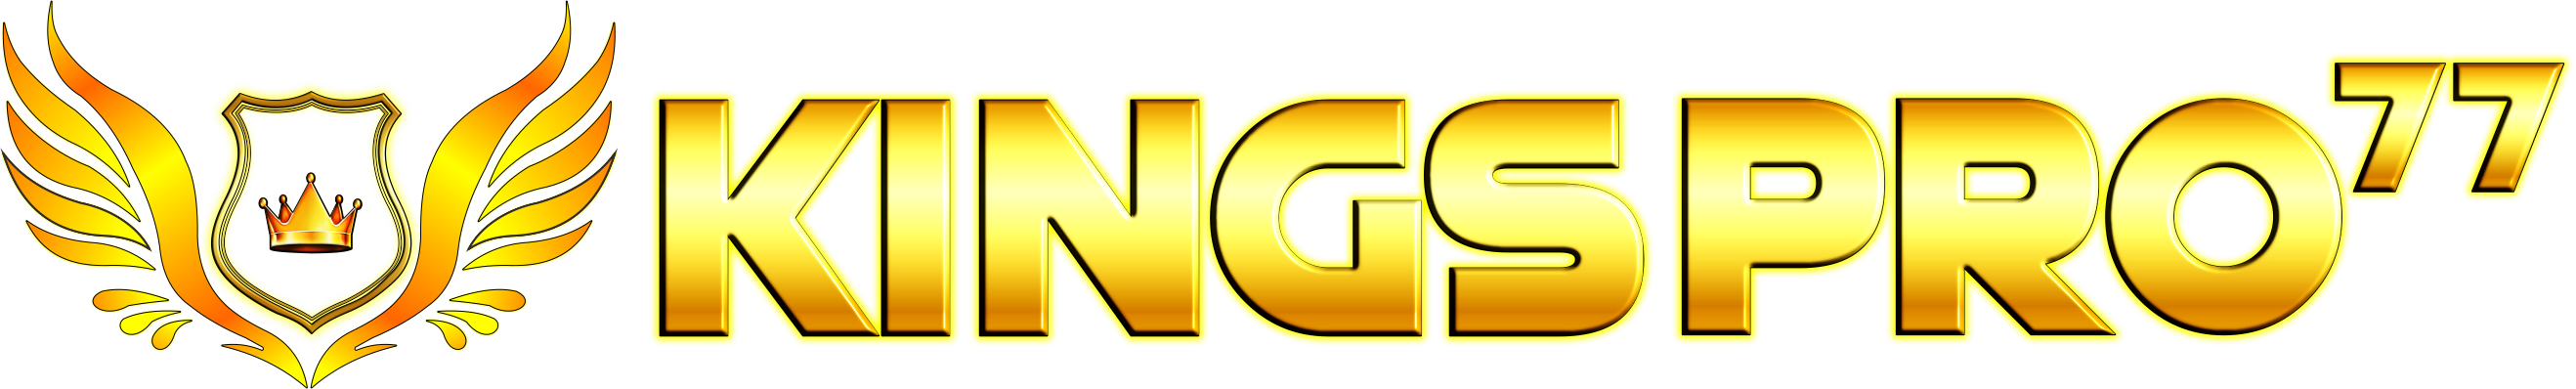 logo Kingspro77